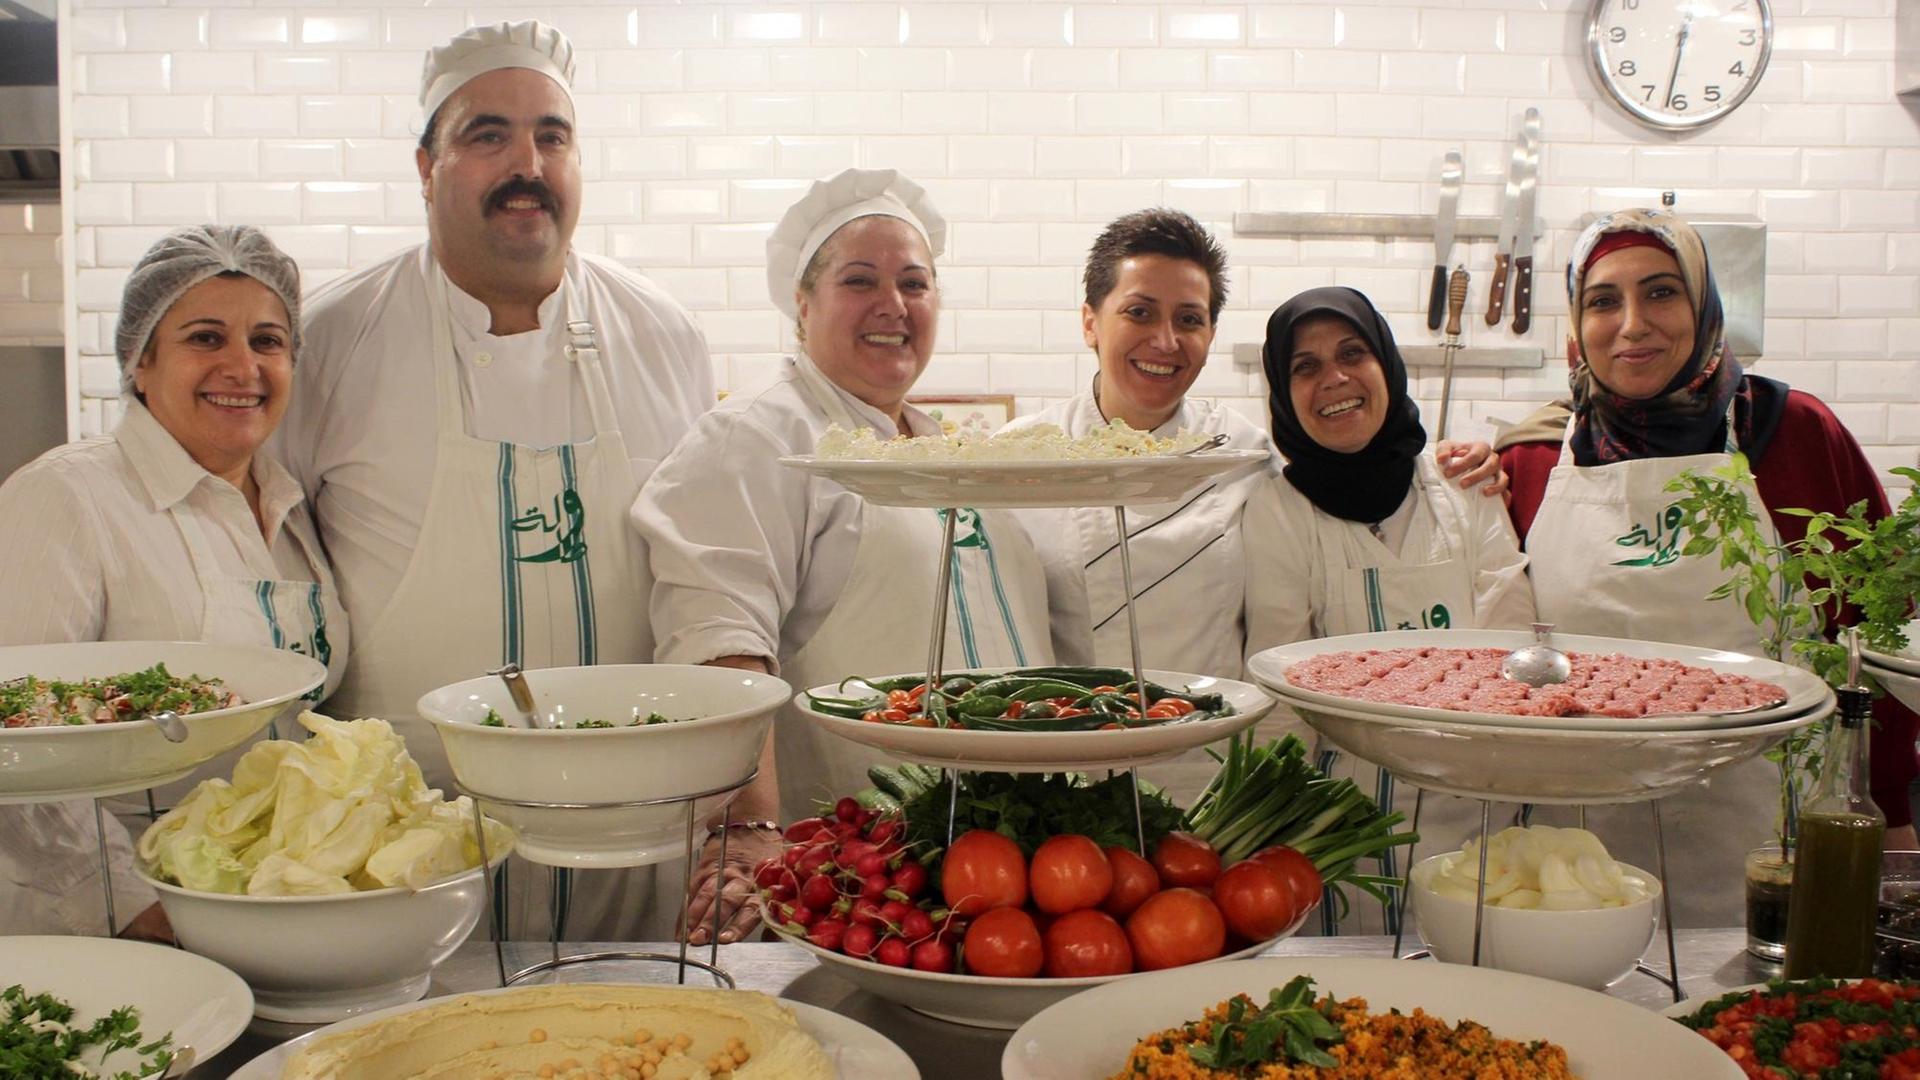 Souk El Tayeb Projekt in Beirut, Libanon. Die Verständigung zwischen den Kulturen geht durch den Magen, glaubt das Team um Friedensaktivist Kamal Mouzawak: Köchinnen Nada, Chef Fadi, Nada, Chef Dima, Zeinab, Wafaa